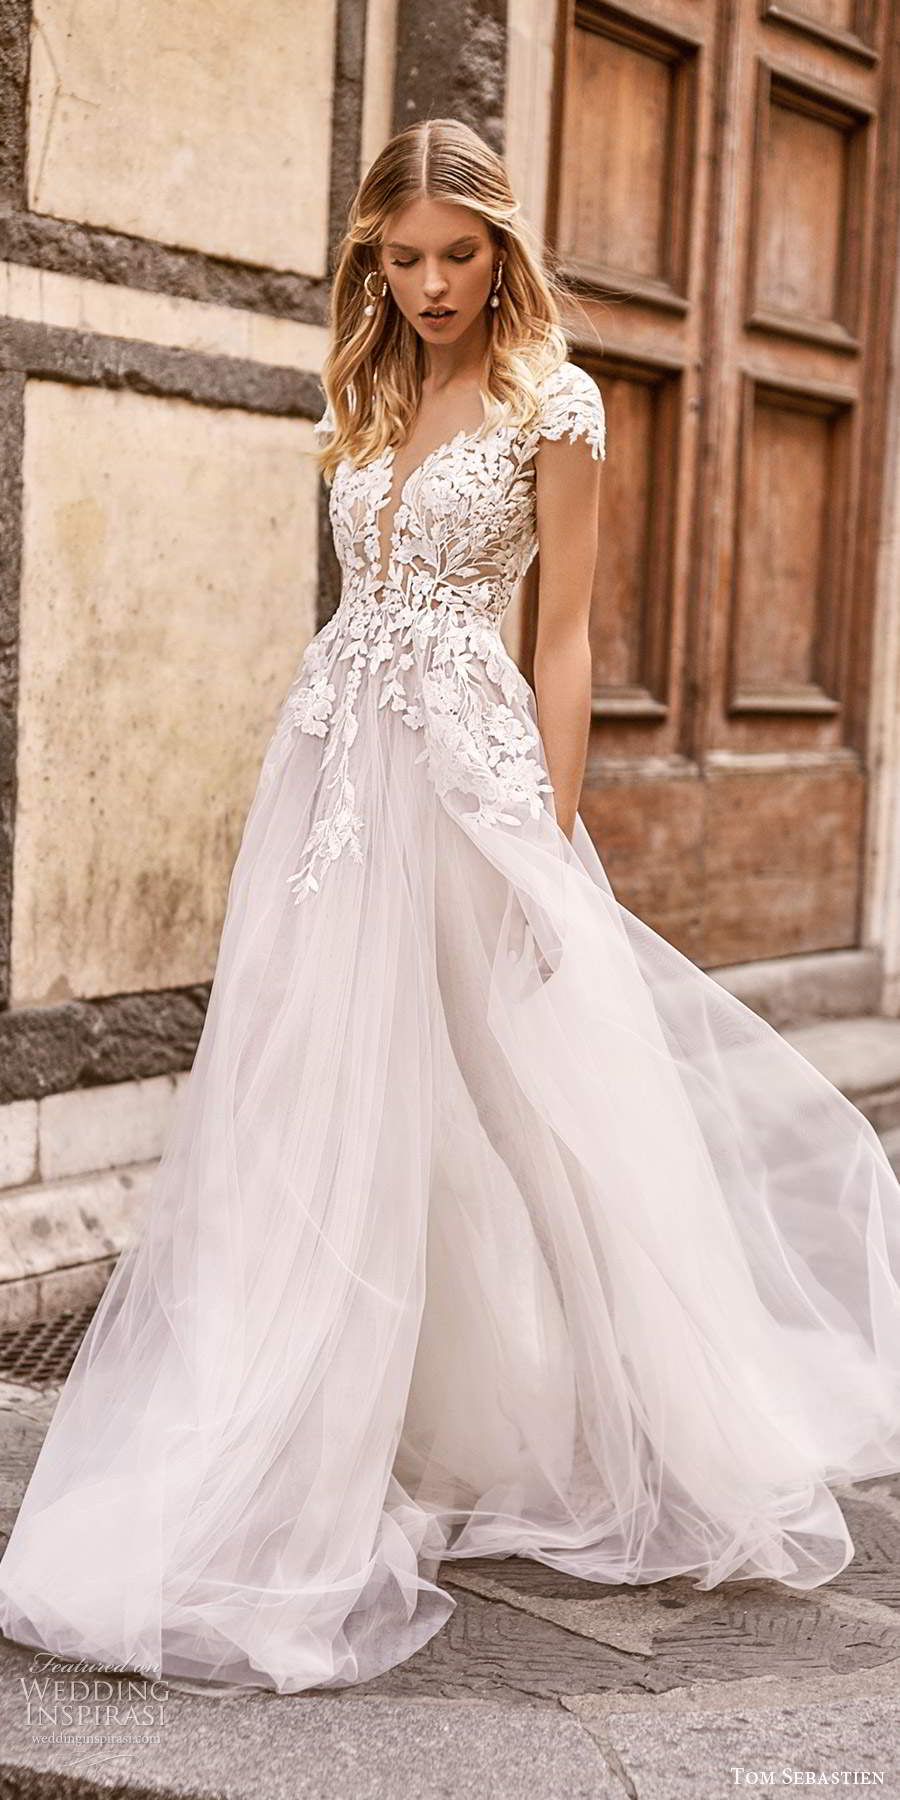 tom sebastien 2020 bridal cap sleeves plunging v neckline heavily embellished a line ball gown wedding dress v back chapel train (15) mv